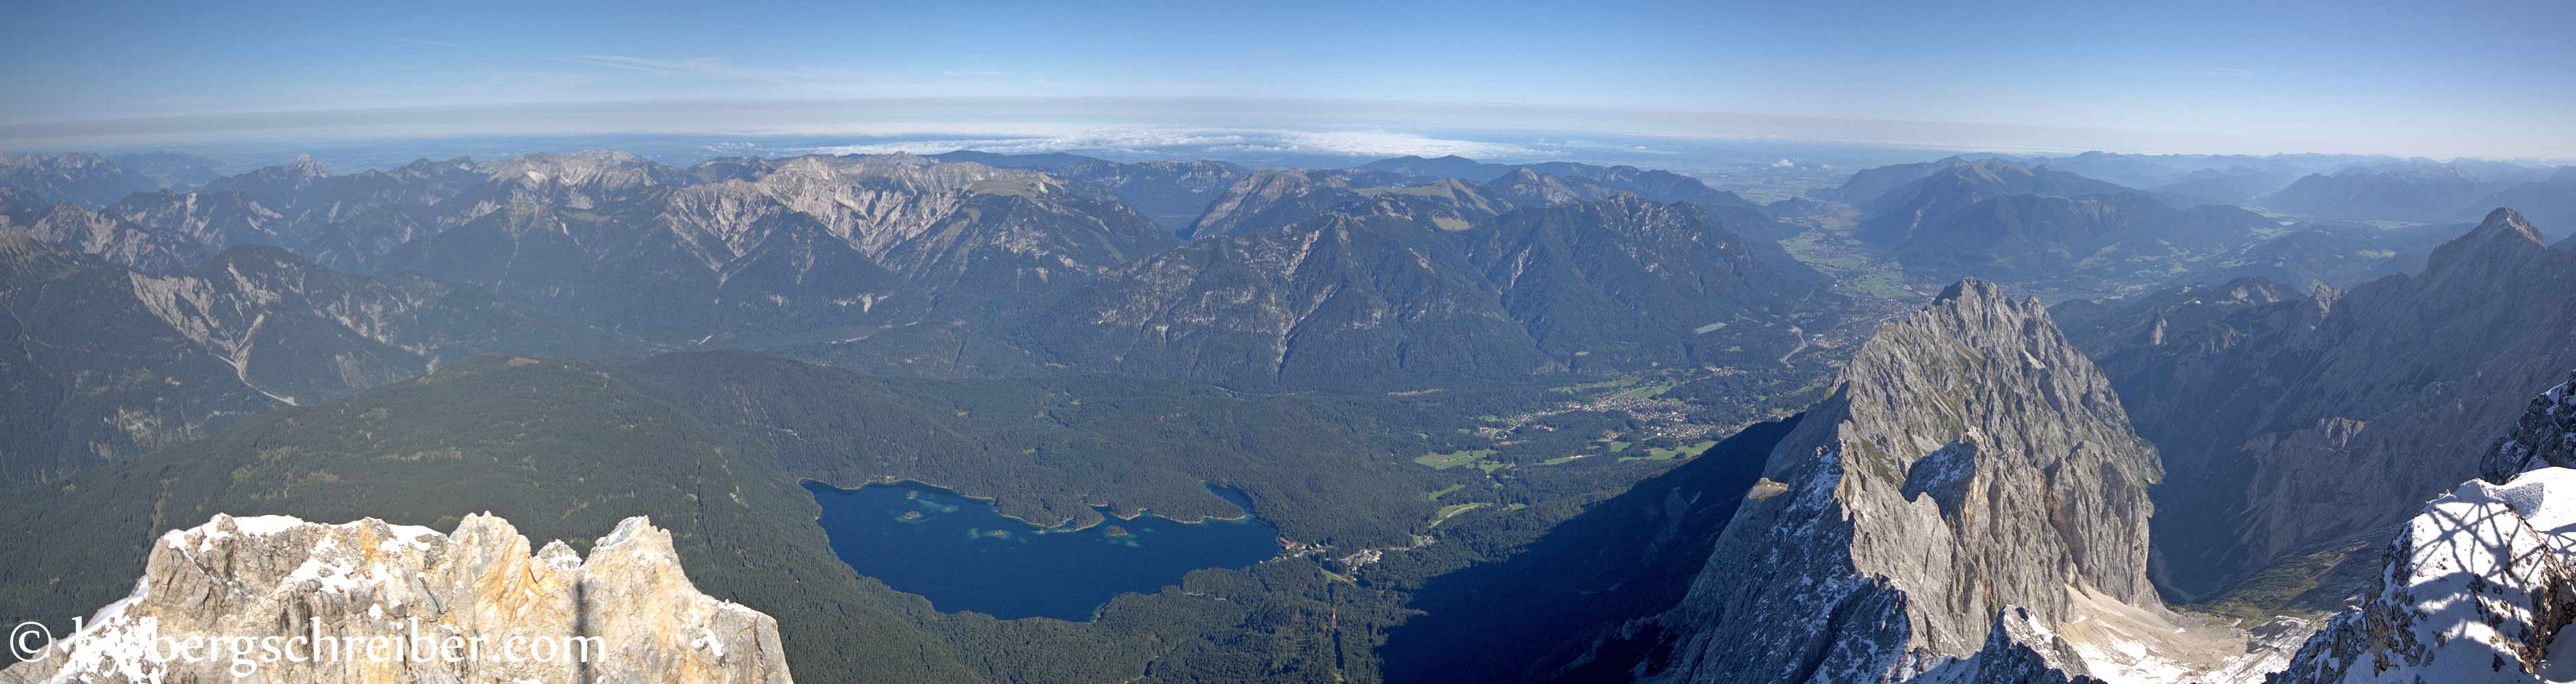 Eibsee, Grainau und Garmisch-Partenkirchen von der Zugspitze - rechts das Hölltal